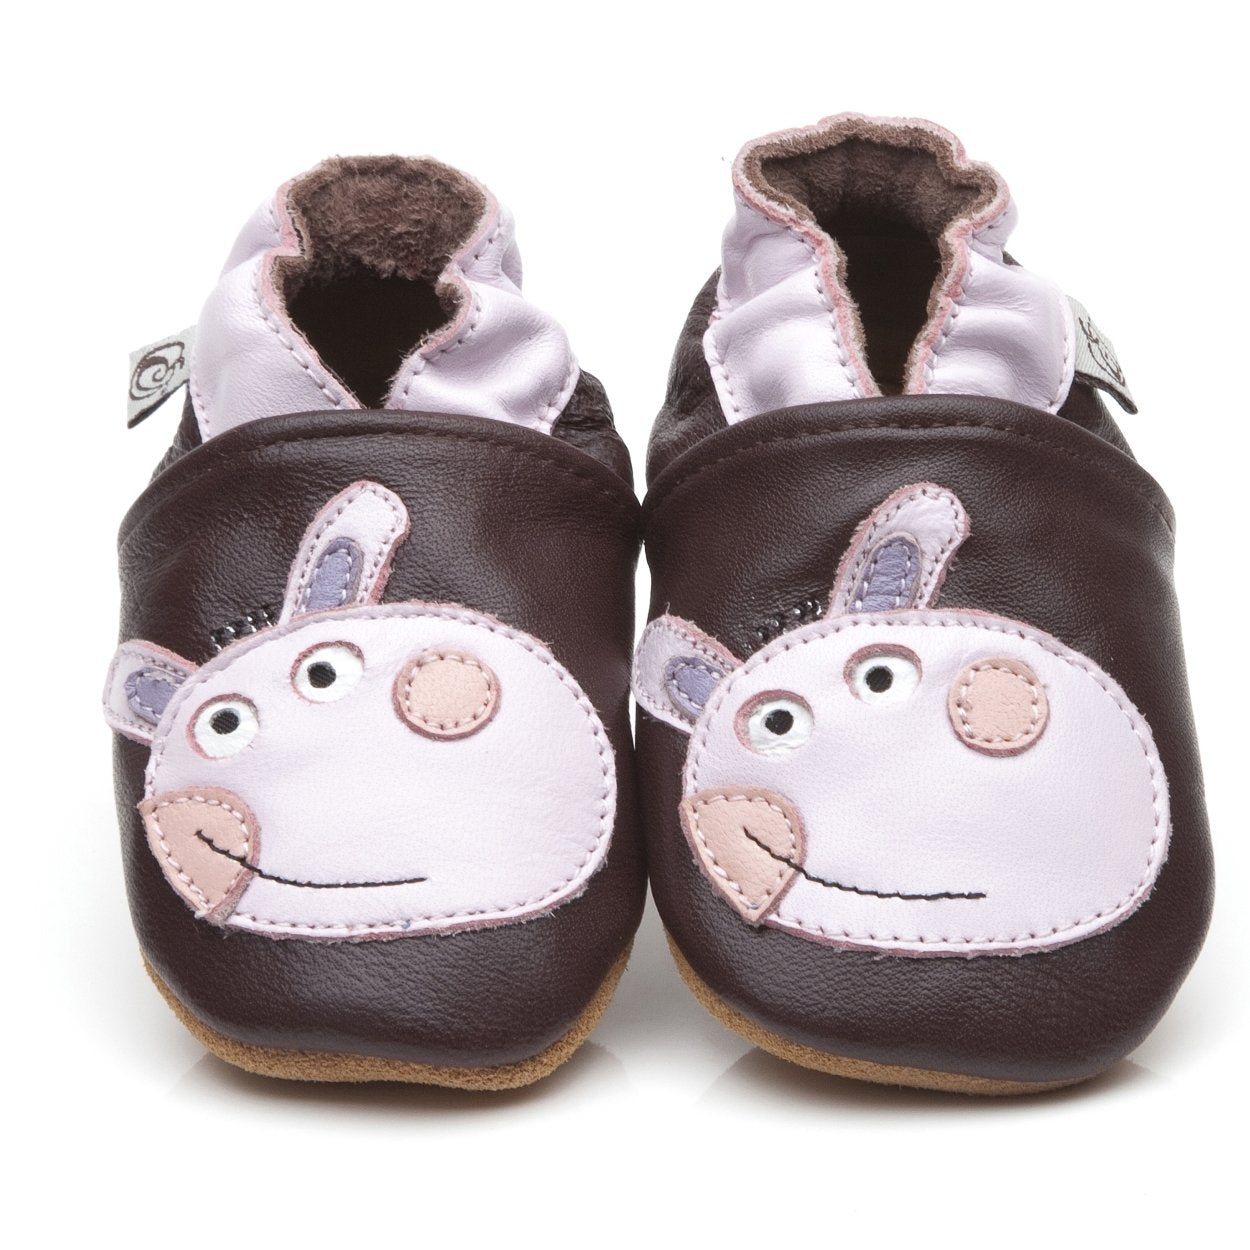 Soft Leather Baby Shoes Donkey